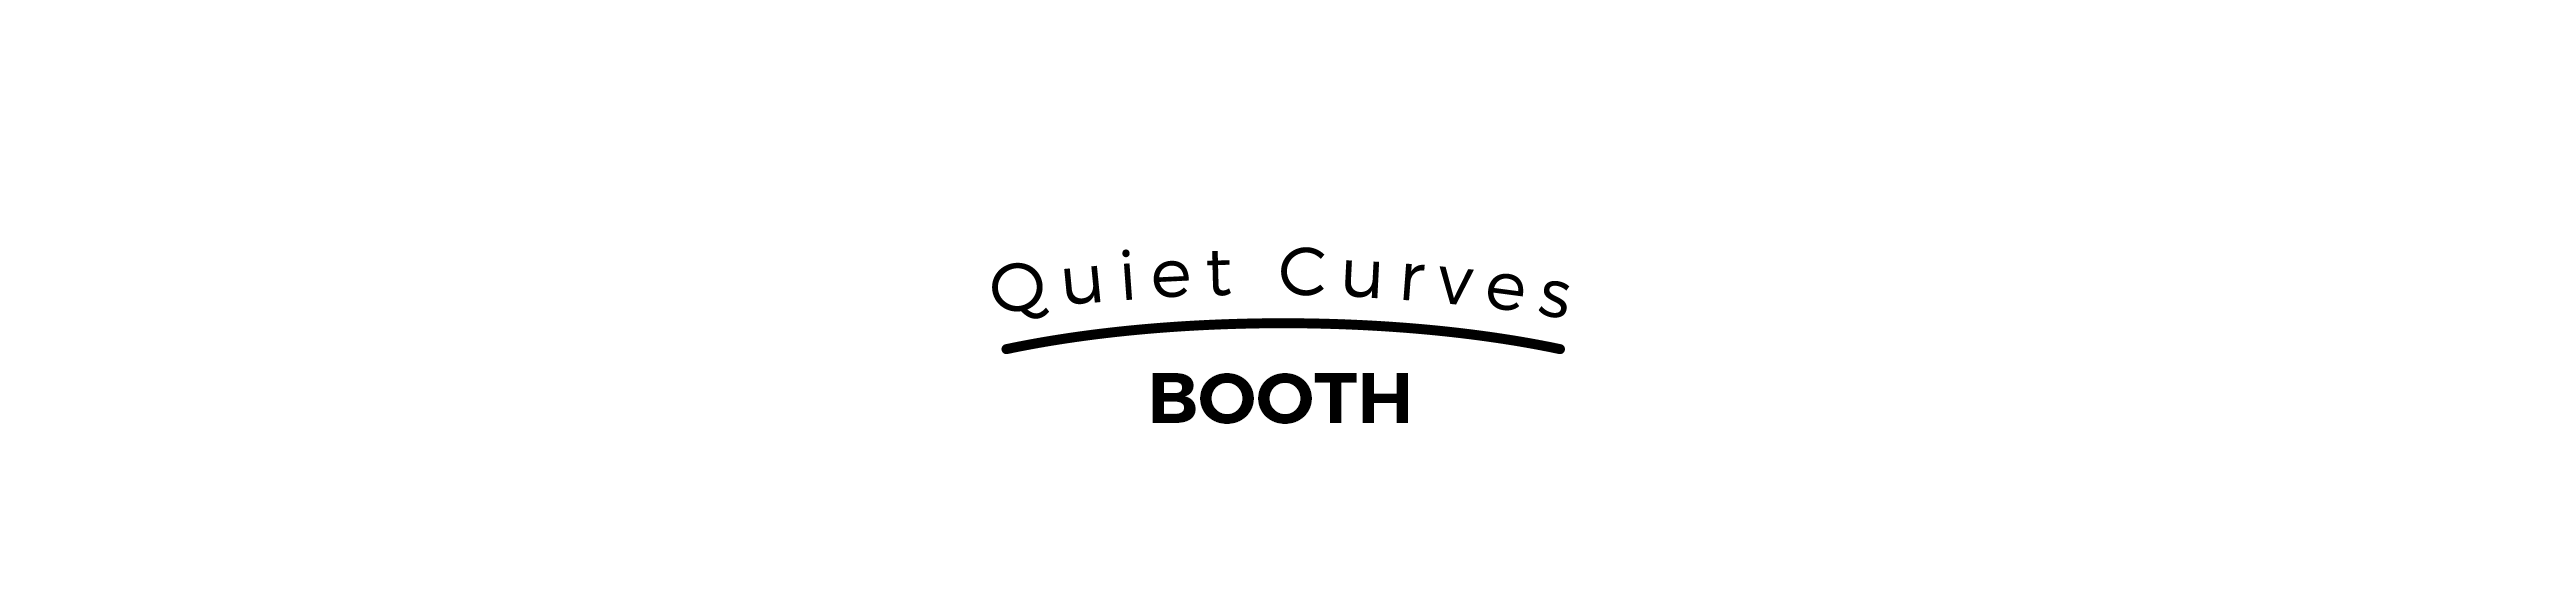 Quiet Curves